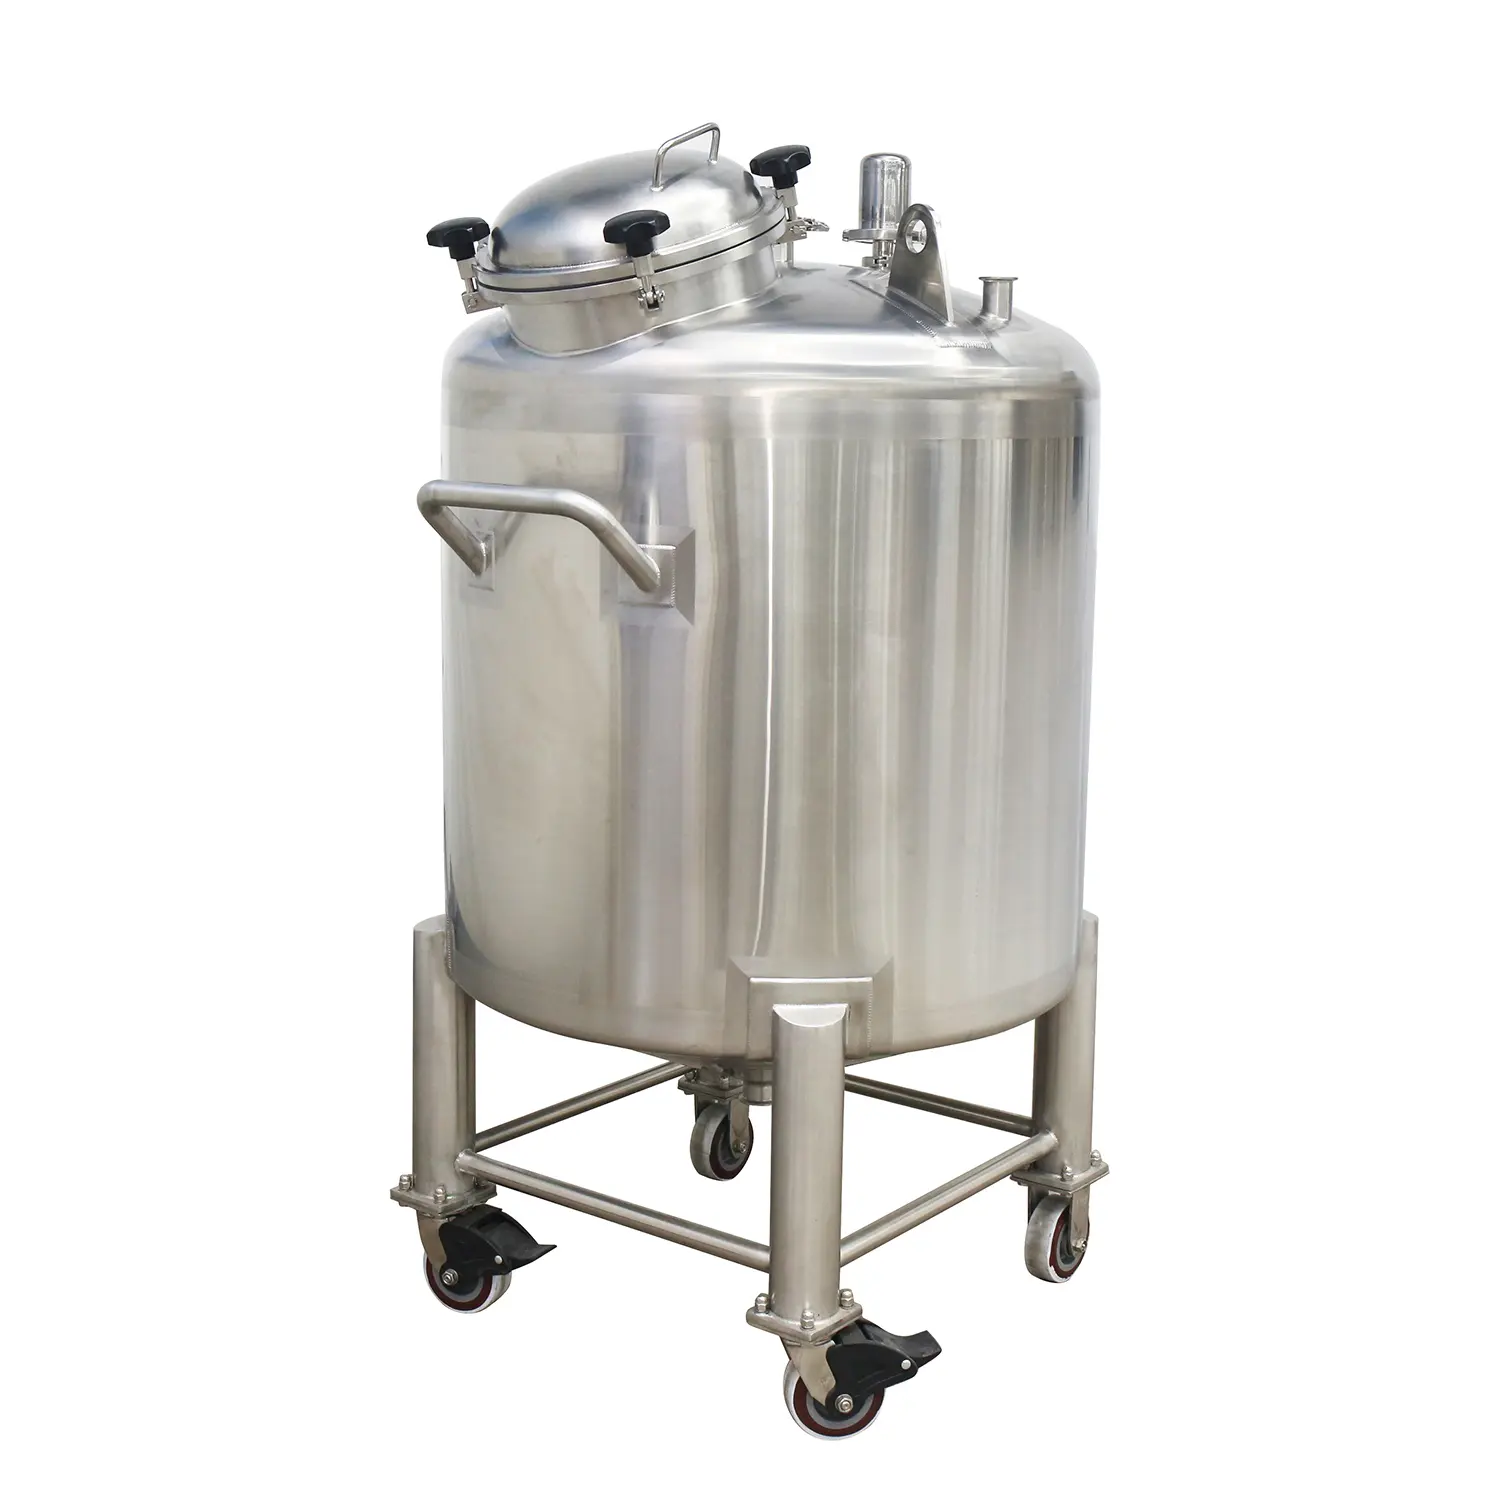 Kunden spezifischer Lagert ank Wasser öl Kraftstoff-und Flüssigkeits speicher Edelstahl-Dichtung stank für die Speicherung von Wasser öl